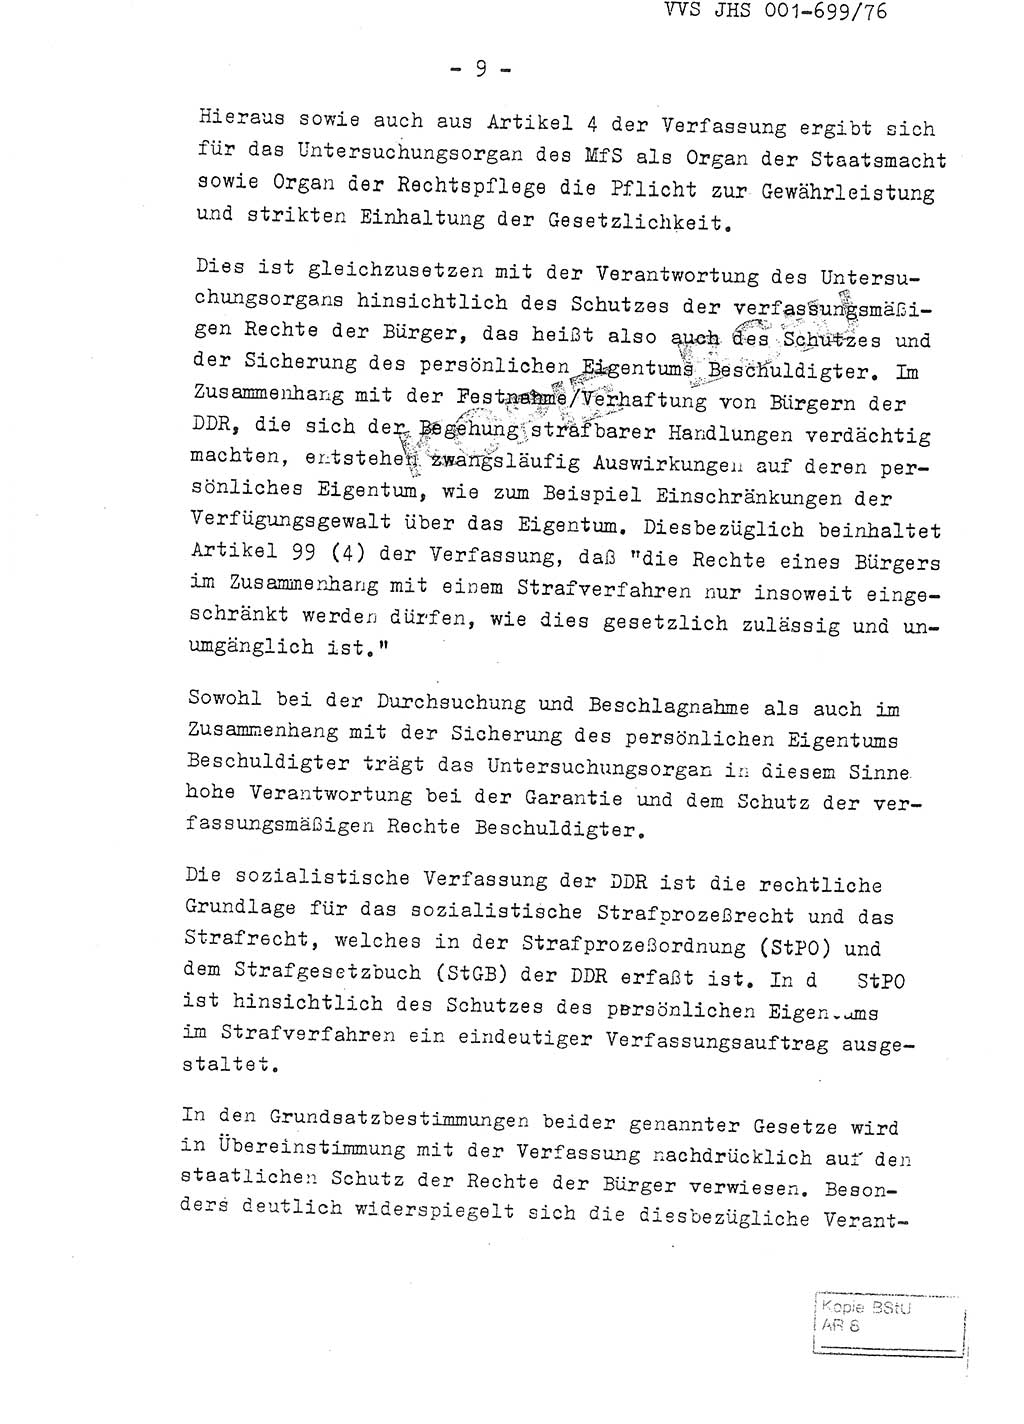 Fachschulabschlußarbeit Leutnant Volkmar Taubert (HA Ⅸ/9), Leutnant Axel Naumann (HA Ⅸ/9), Unterleutnat Detlef Debski (HA Ⅸ/9), Ministerium für Staatssicherheit (MfS) [Deutsche Demokratische Republik (DDR)], Juristische Hochschule (JHS), Vertrauliche Verschlußsache (VVS) 001-699/76, Potsdam 1976, Seite 9 (FS-Abschl.-Arb. MfS DDR JHS VVS 001-699/76 1976, S. 9)